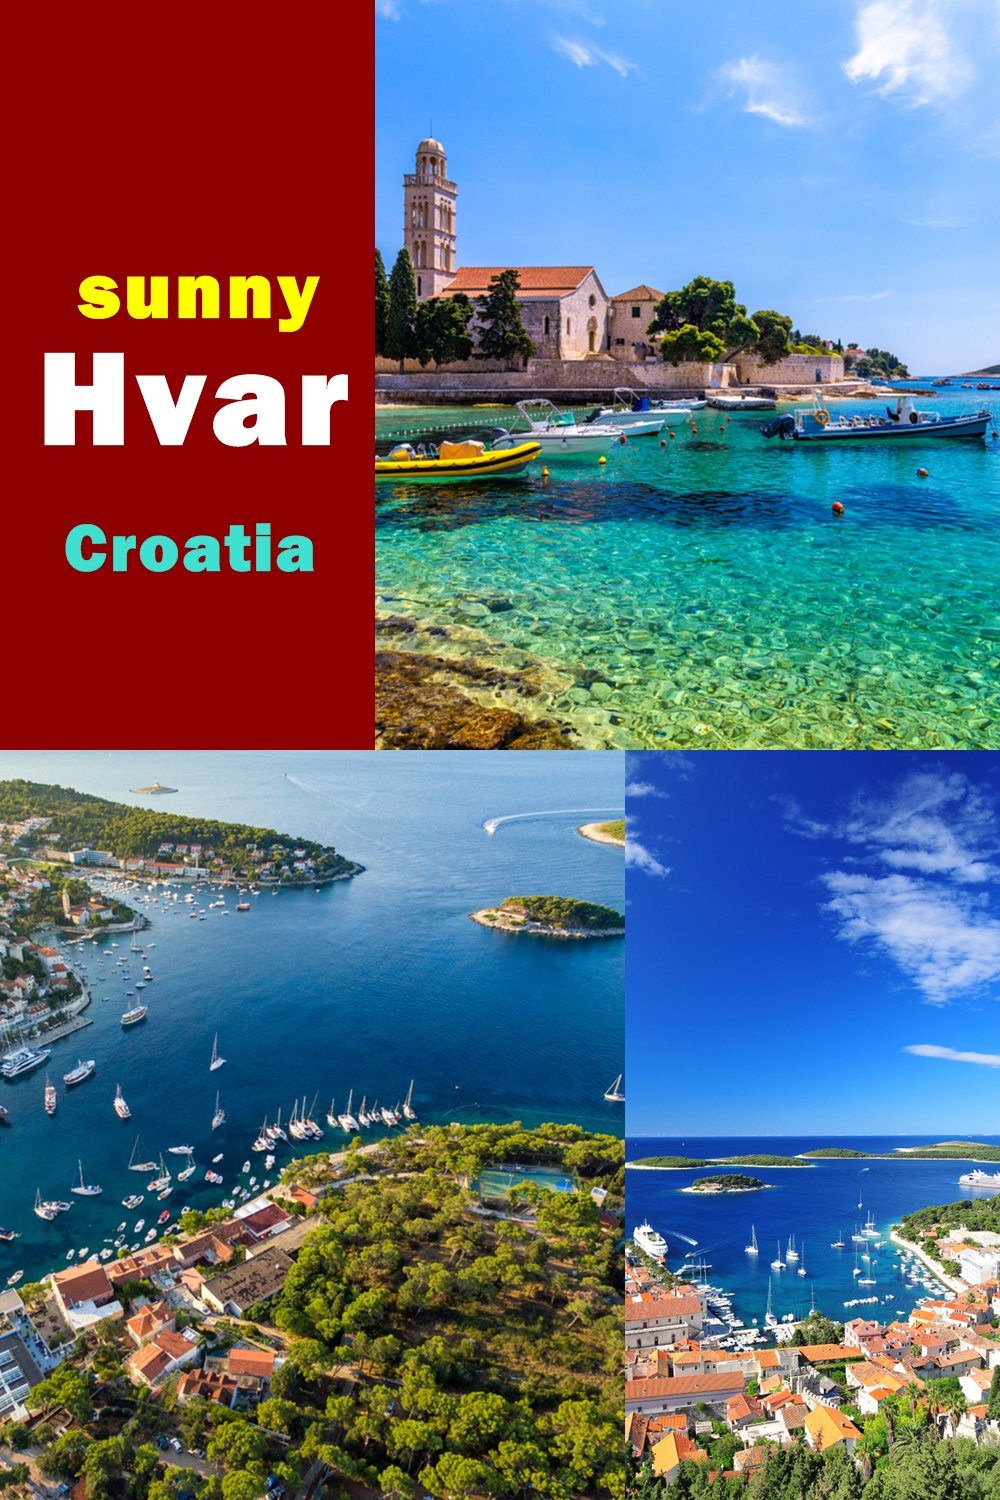 Luxury Hvar - a sunny island